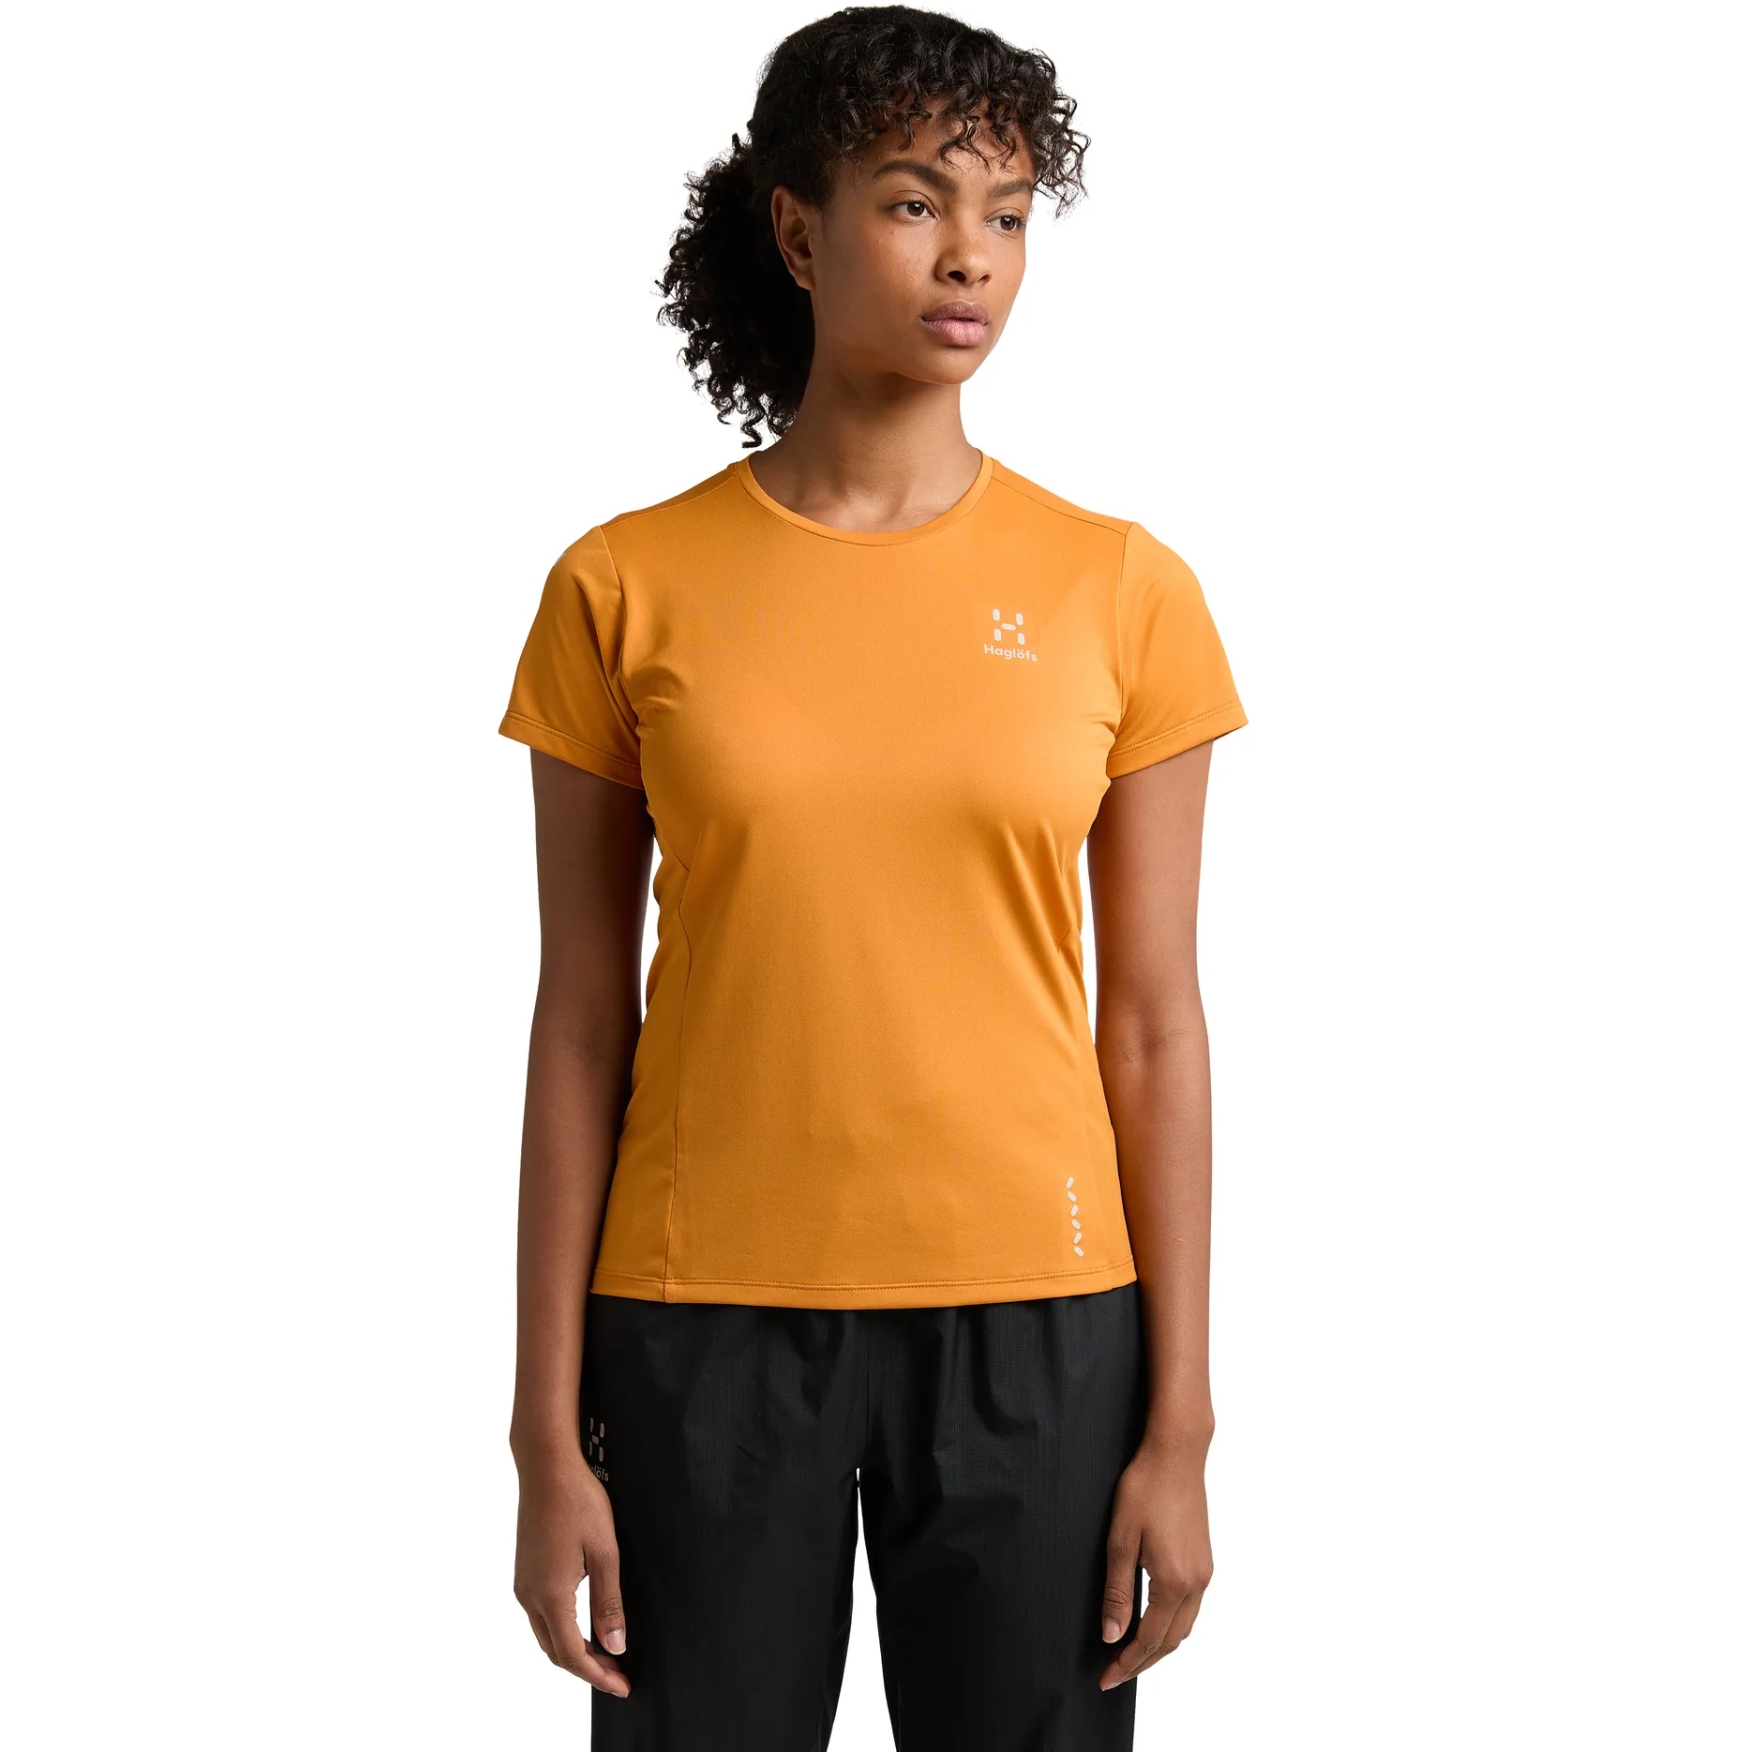 Produktbild von Haglöfs L.I.M Tech T-Shirt Damen - desert yellow 48H